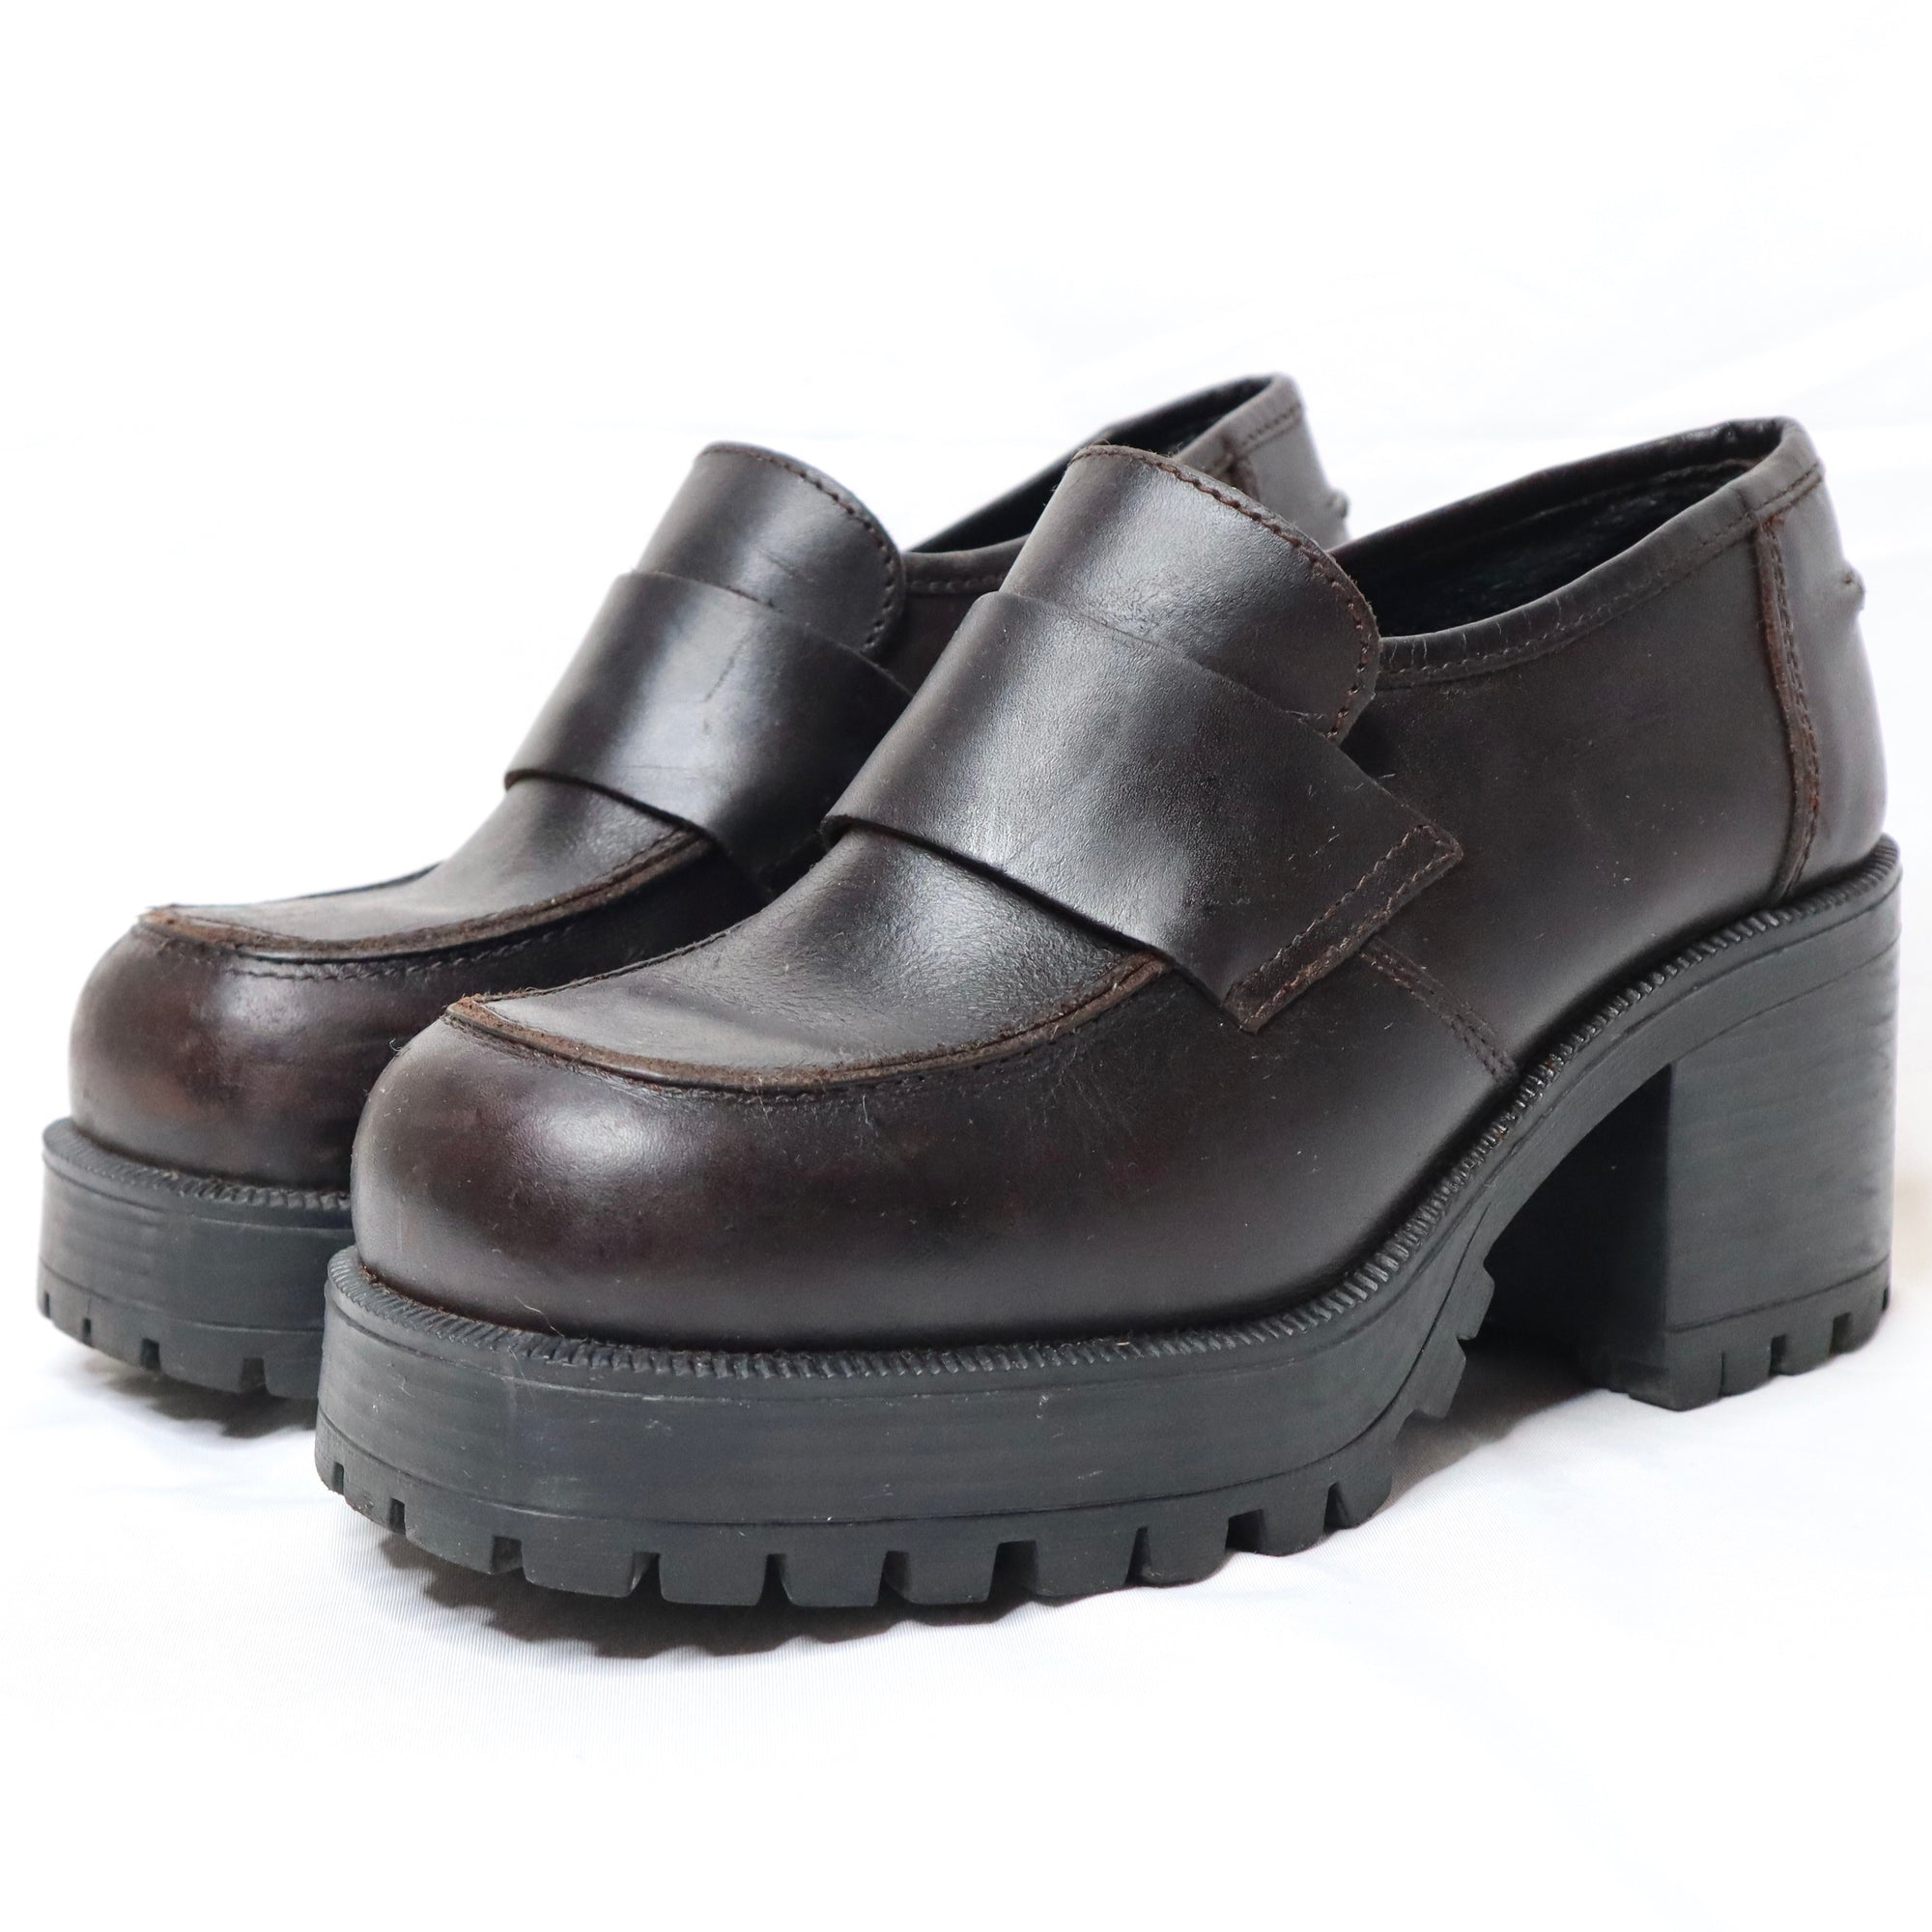 Platform Shoes Online | Buy Platform Heels Online | Novo Shoes